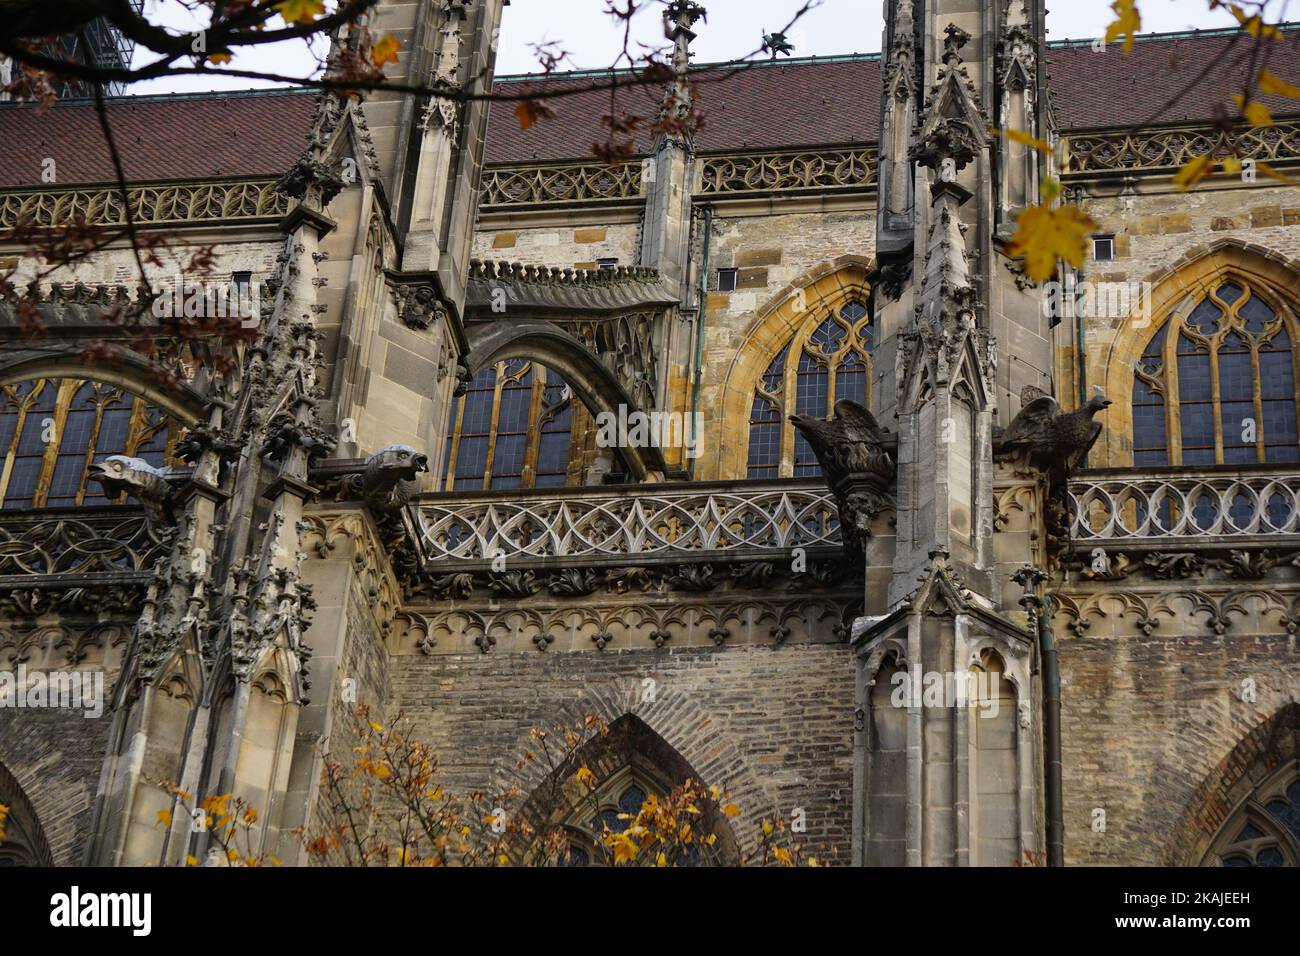 Eine herrliche Aussicht auf das Ulmer Münster in Ulm, Deutschland mit gotischen Bögen an den Wänden und Fenstern Stockfoto